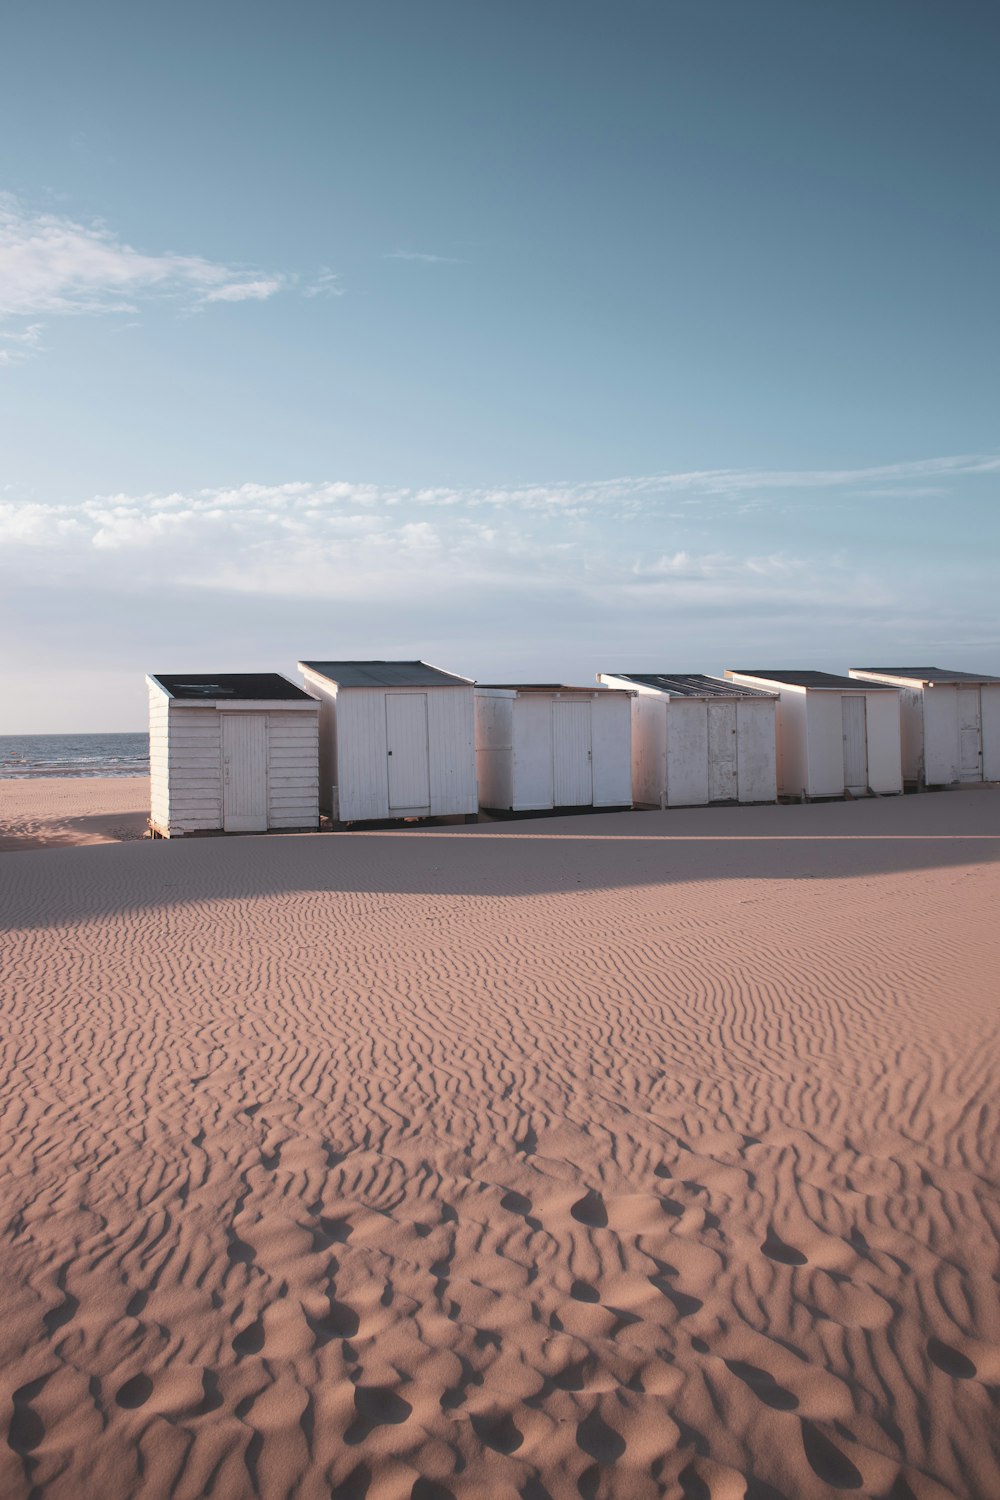 Un groupe de conteneurs blancs sur une plage de sable